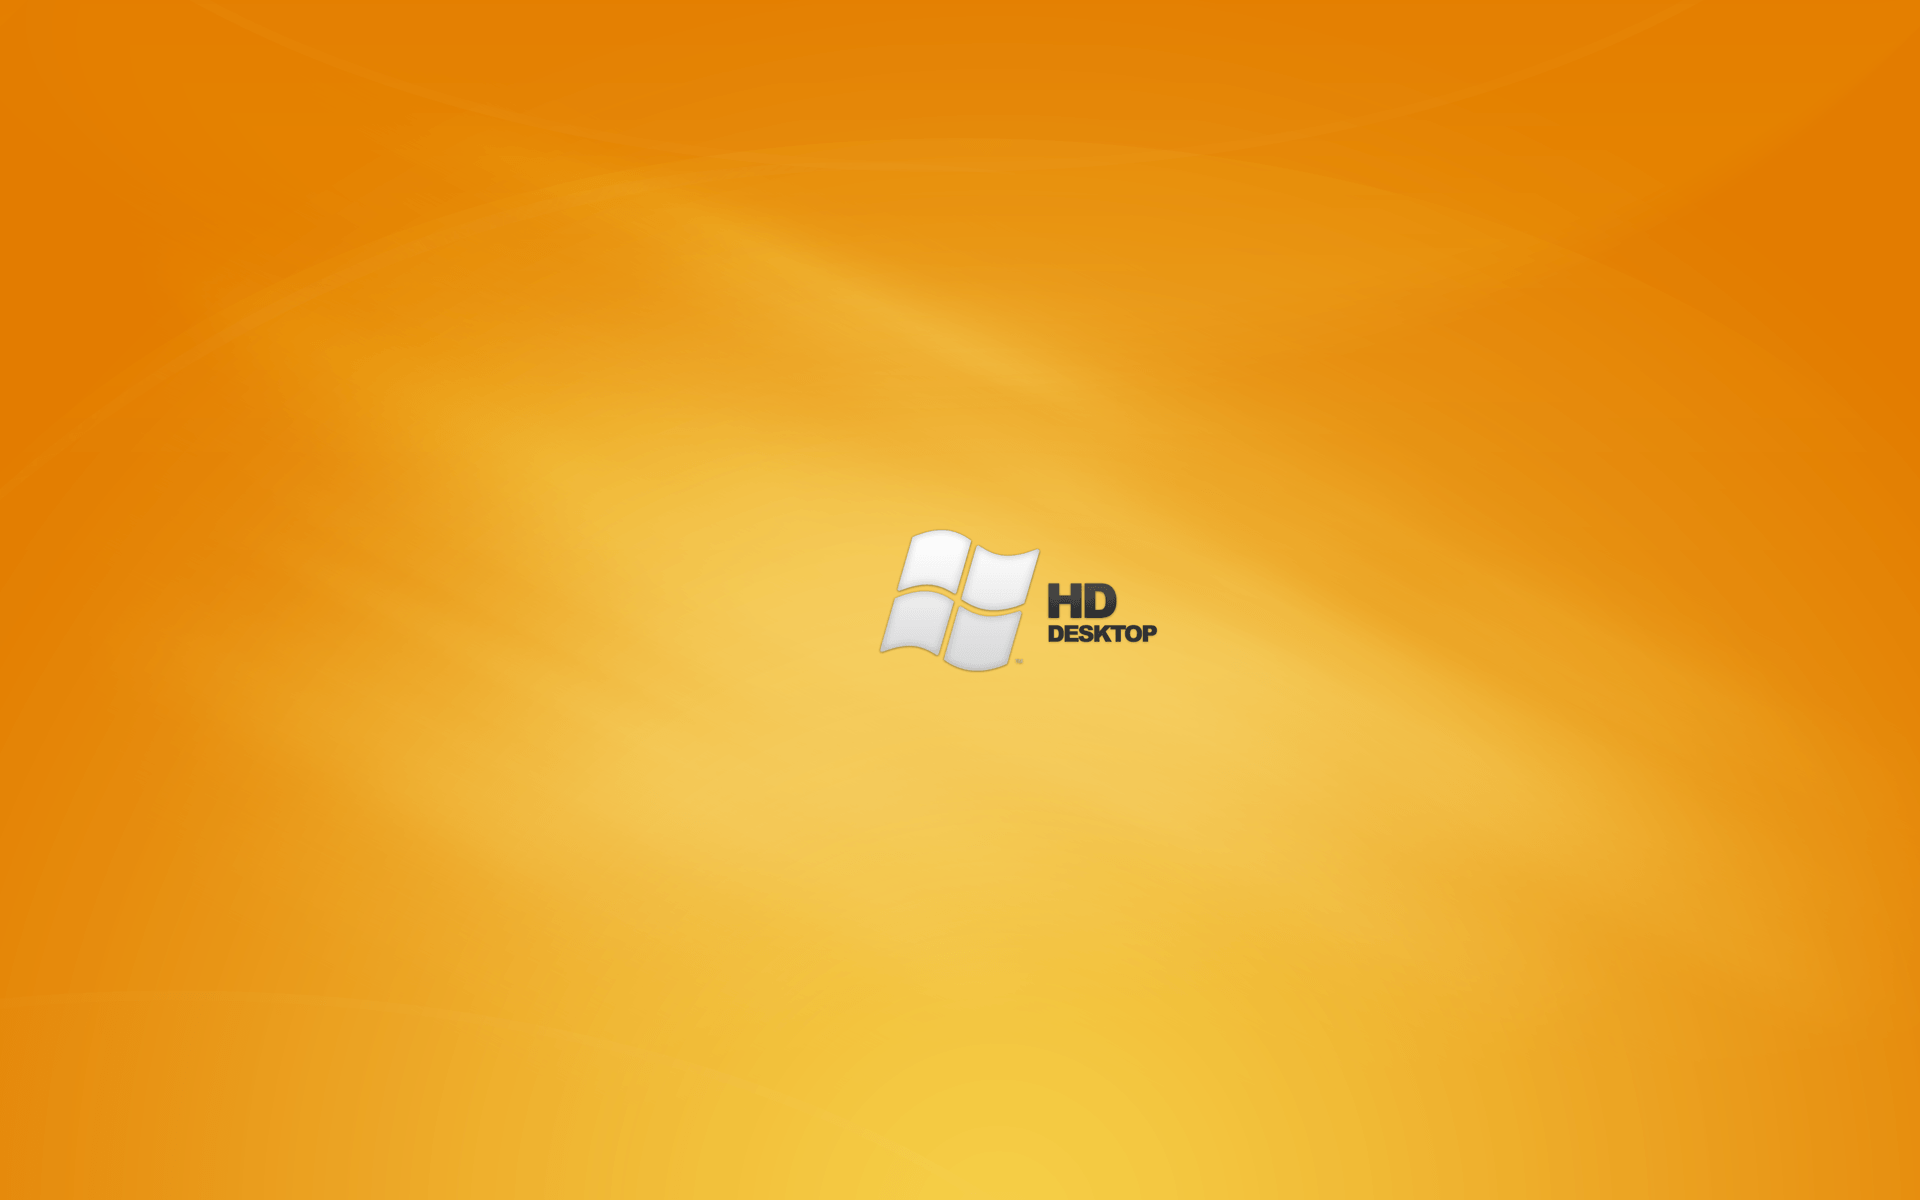 Windows 10 HD Wallpaper. Sky HD Wallpaper